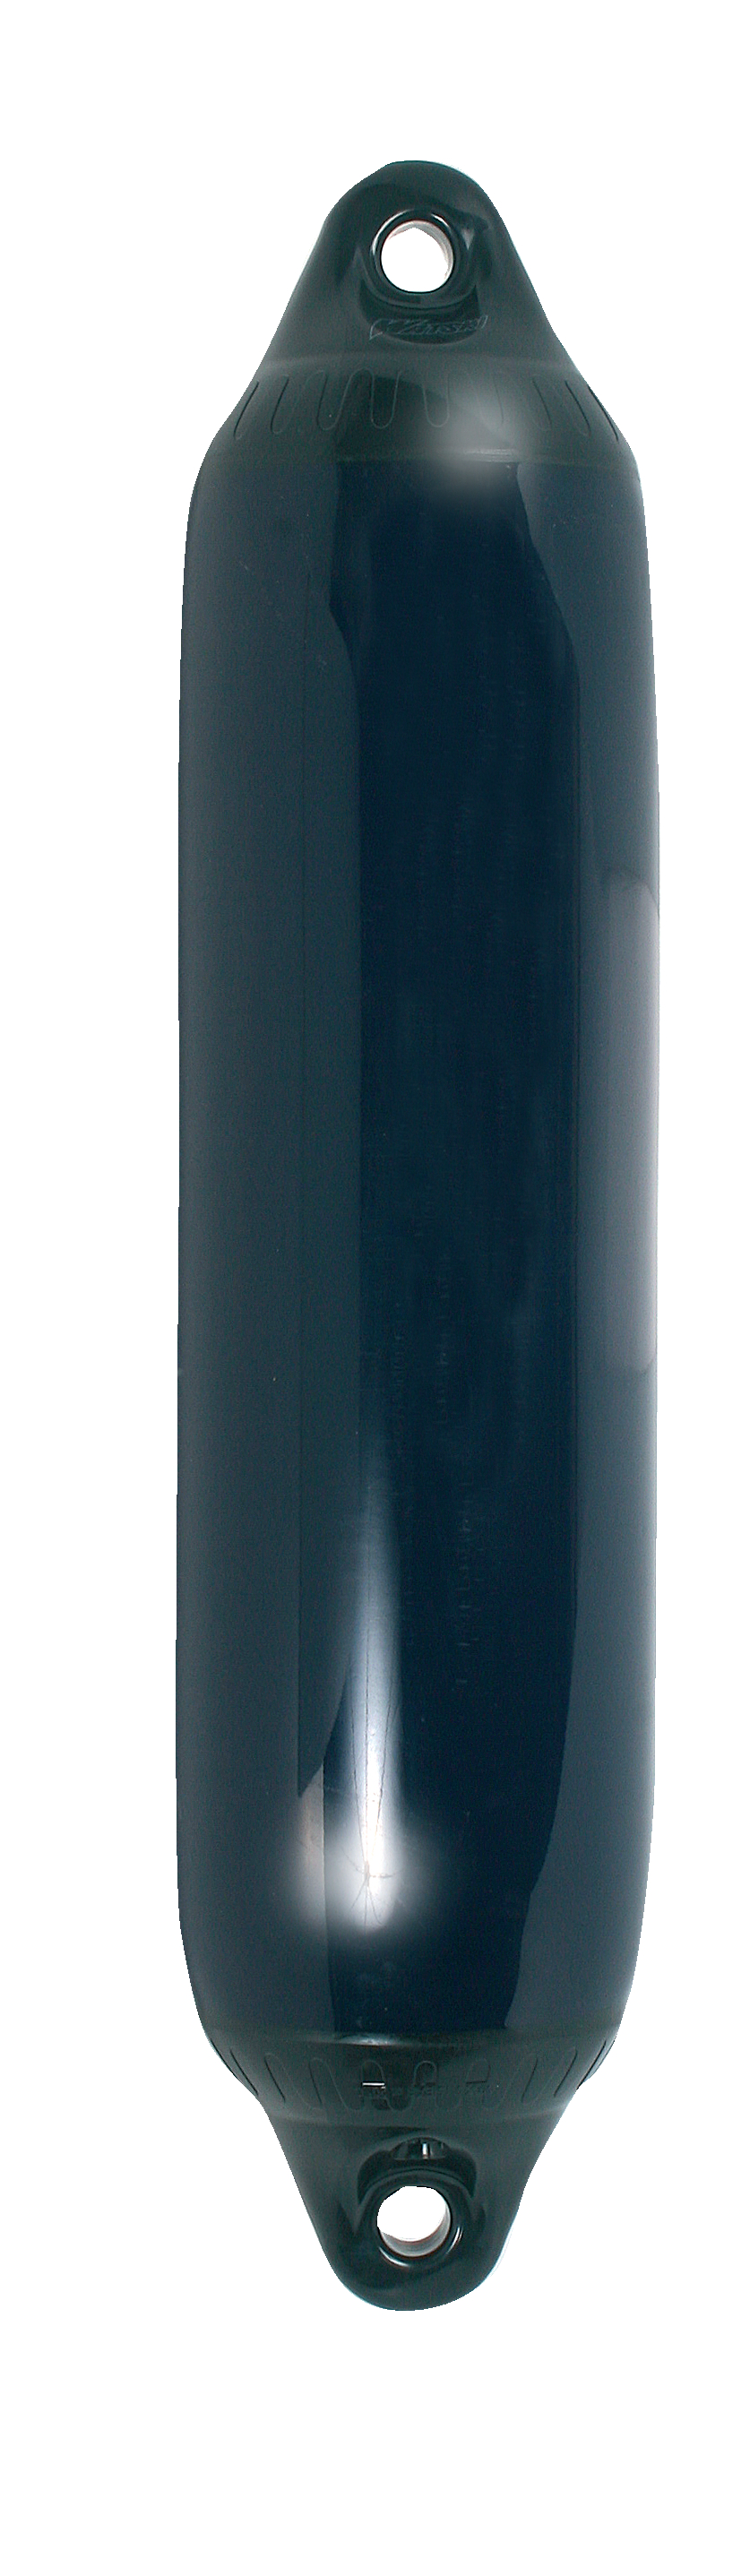 Fender F1 150x610mm Blå/svart